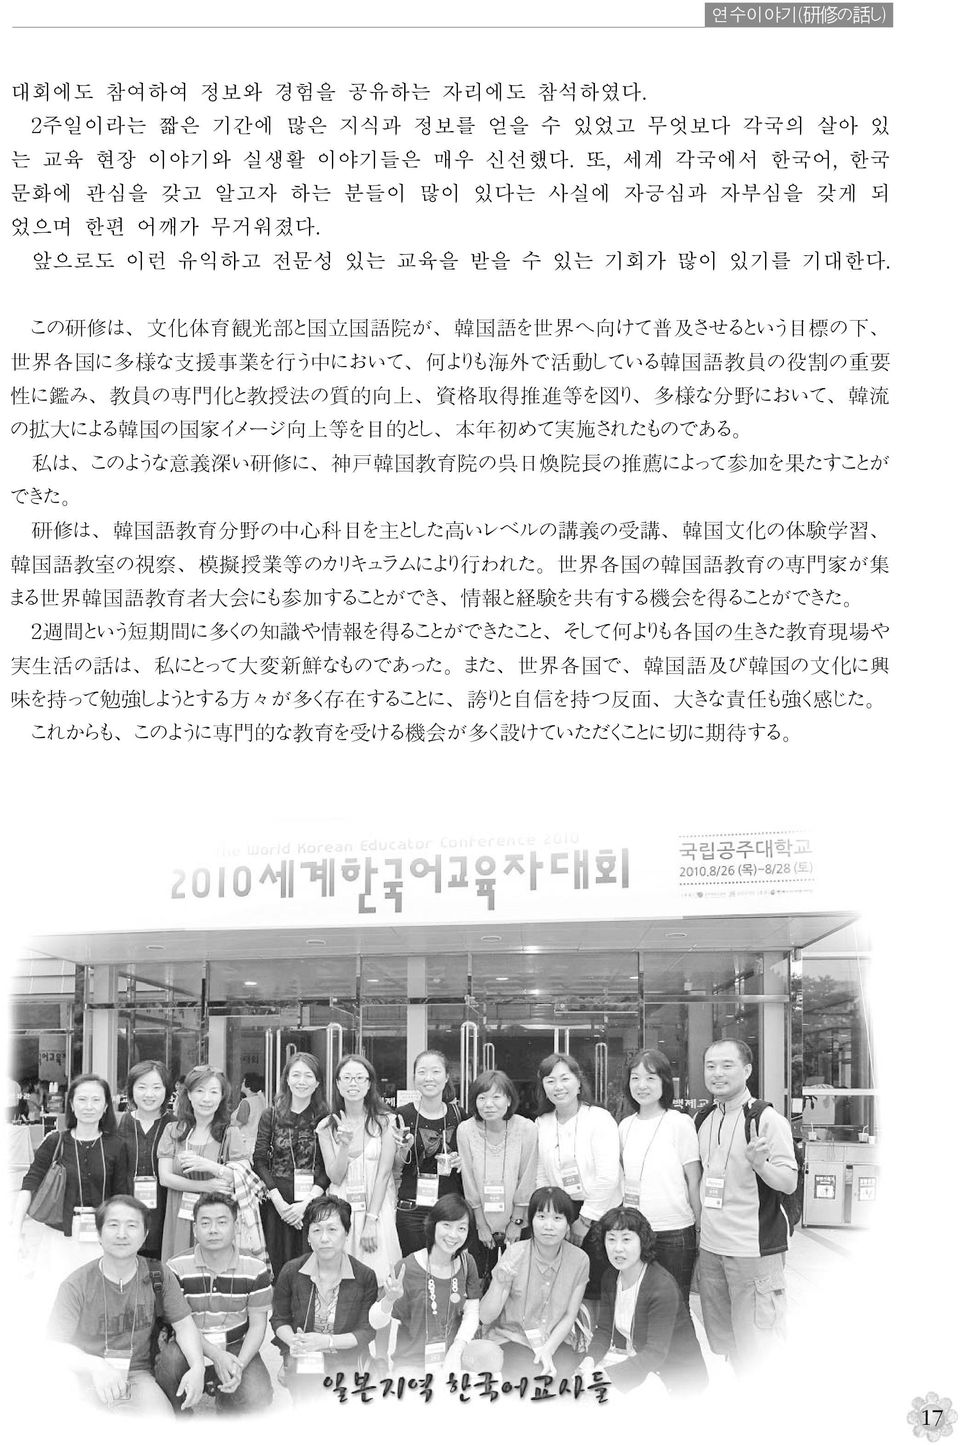 この 研 修 は 文 化 体 育 観 光 部 と 国 立 国 語 院 が 韓 国 語 を 世 界 へ 向 けて 普 及 させるという 目 標 の 下 世 界 各 国 に 多 様 な 支 援 事 業 を 行 う 中 において 何 よりも 海 外 で 活 動 している 韓 国 語 教 員 の 役 割 の 重 要 性 に 鑑 み 教 員 の 専 門 化 と 教 授 法 の 質 的 向 上 資 格 取